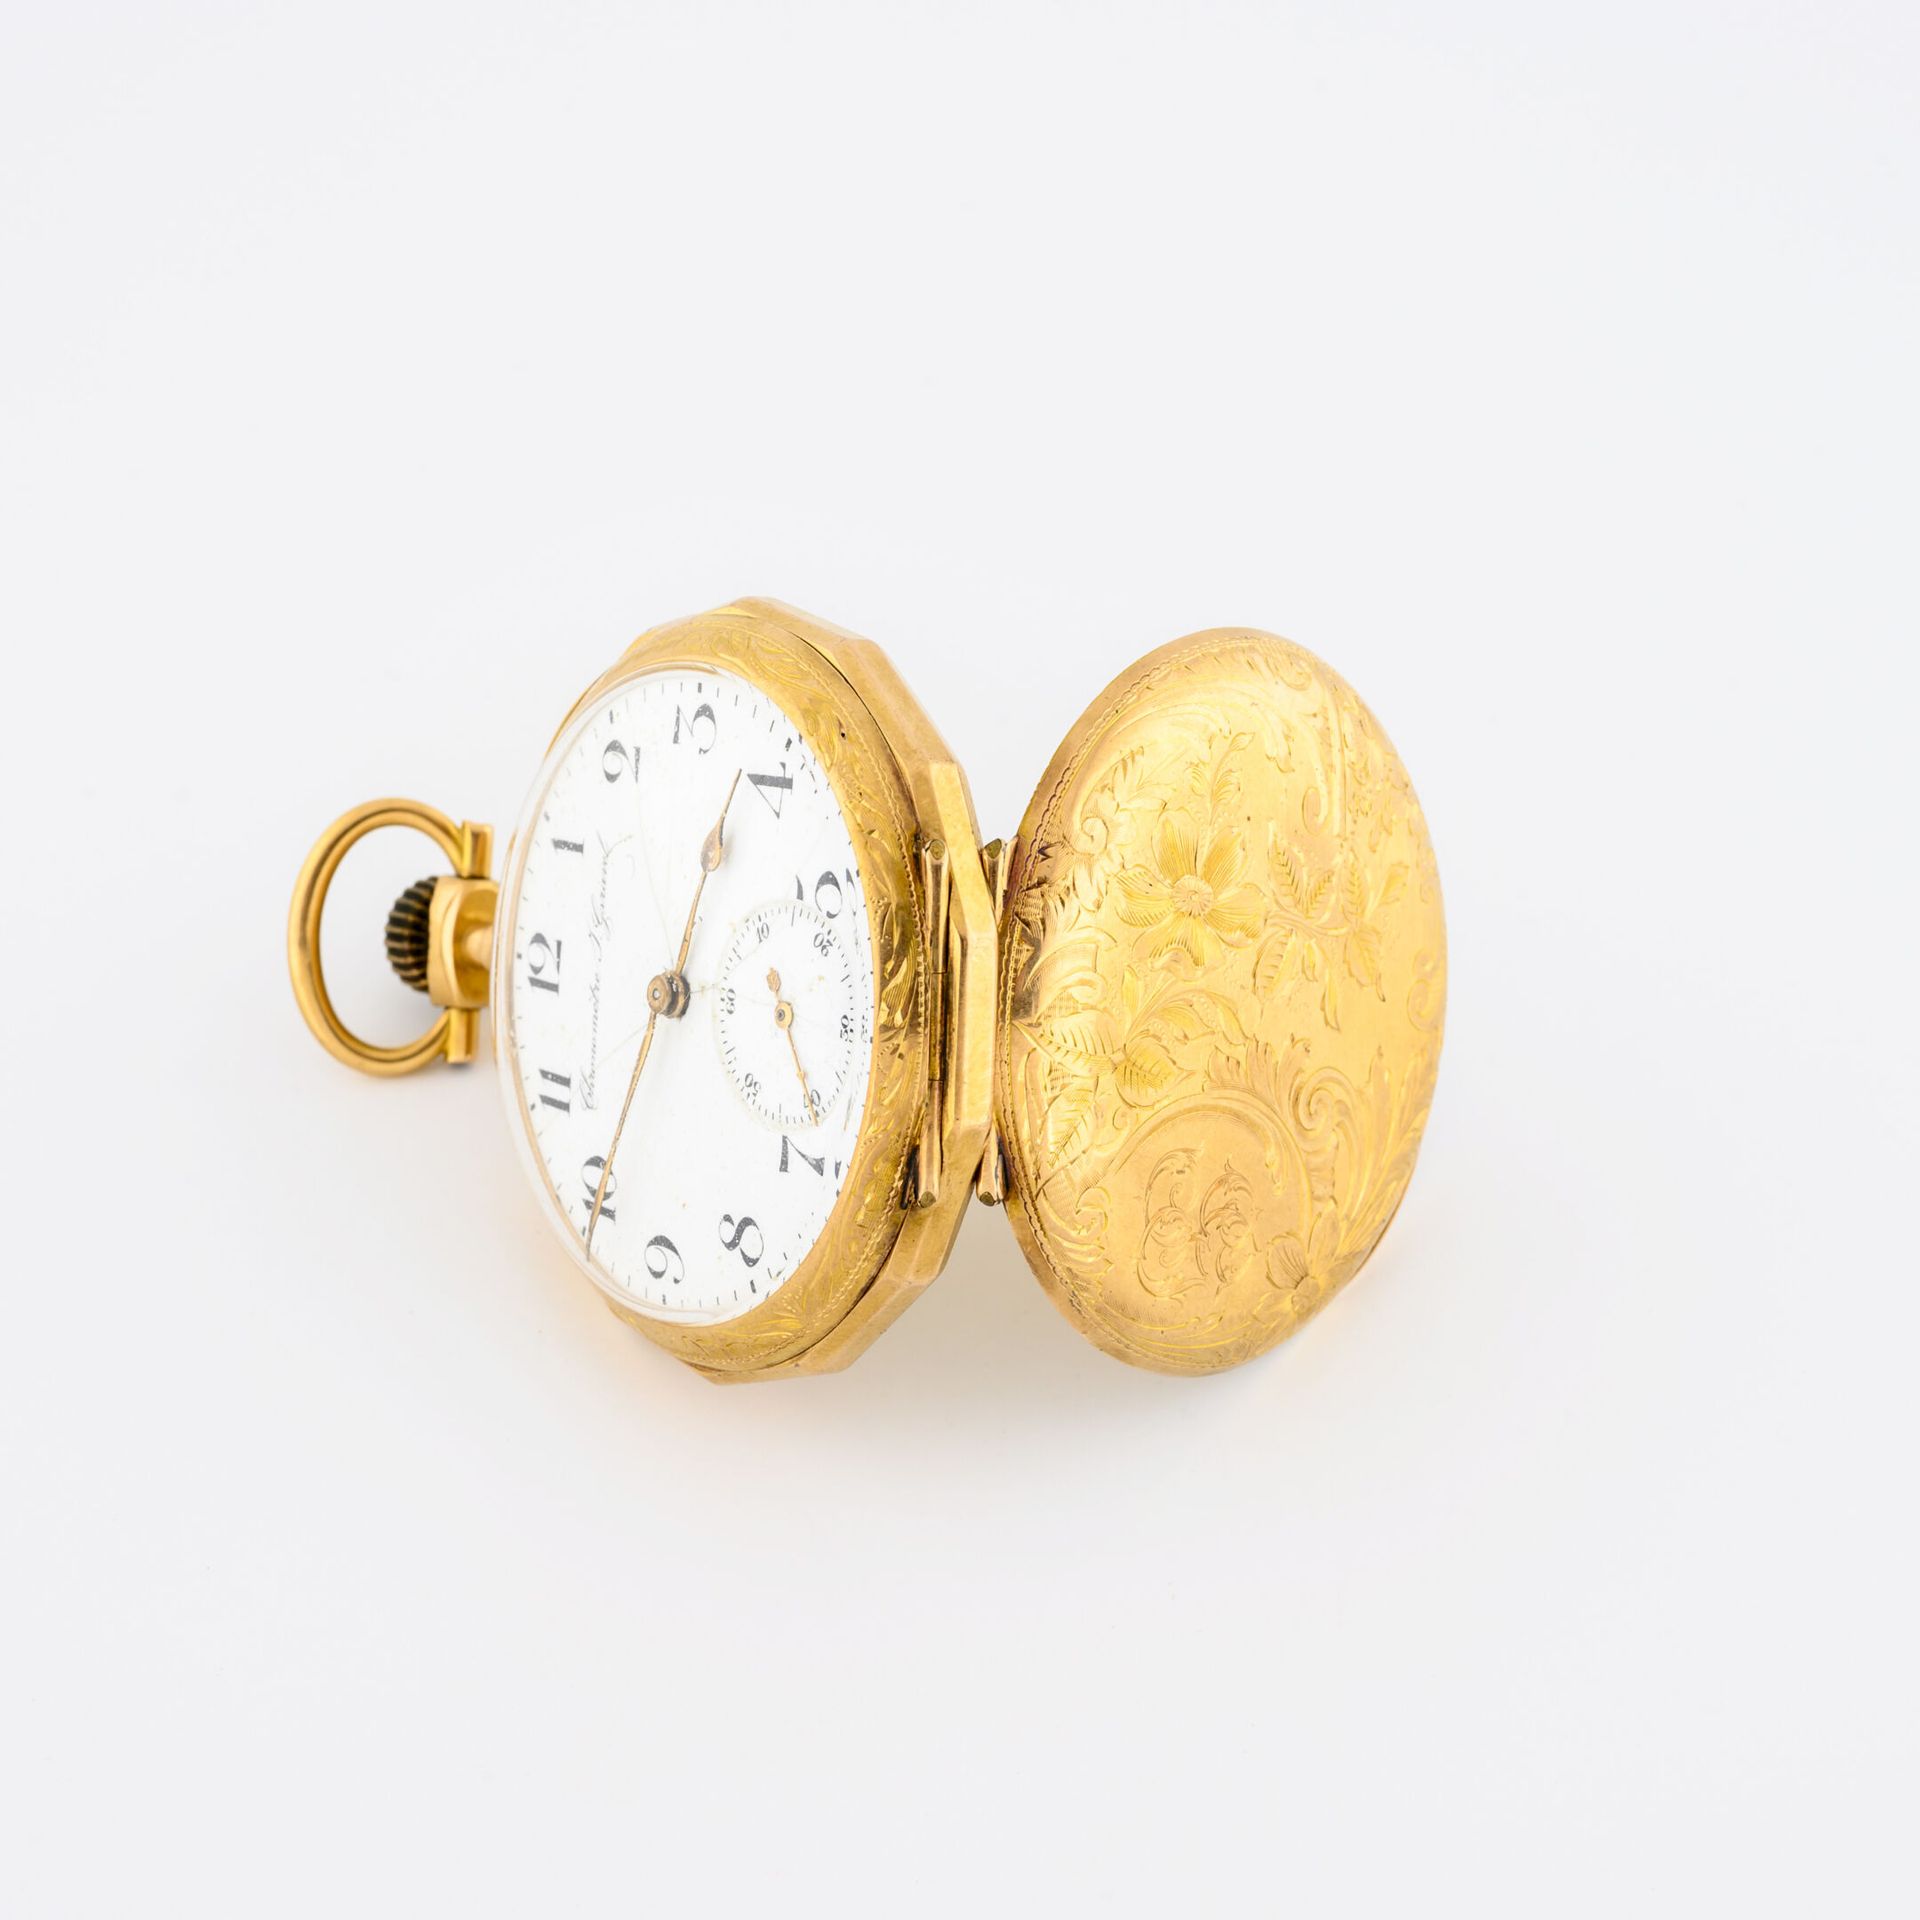 Chronomètre J.GARAVEL Taschenuhr aus Gelbgold (750).

Hinterer Deckel mit ziseli&hellip;